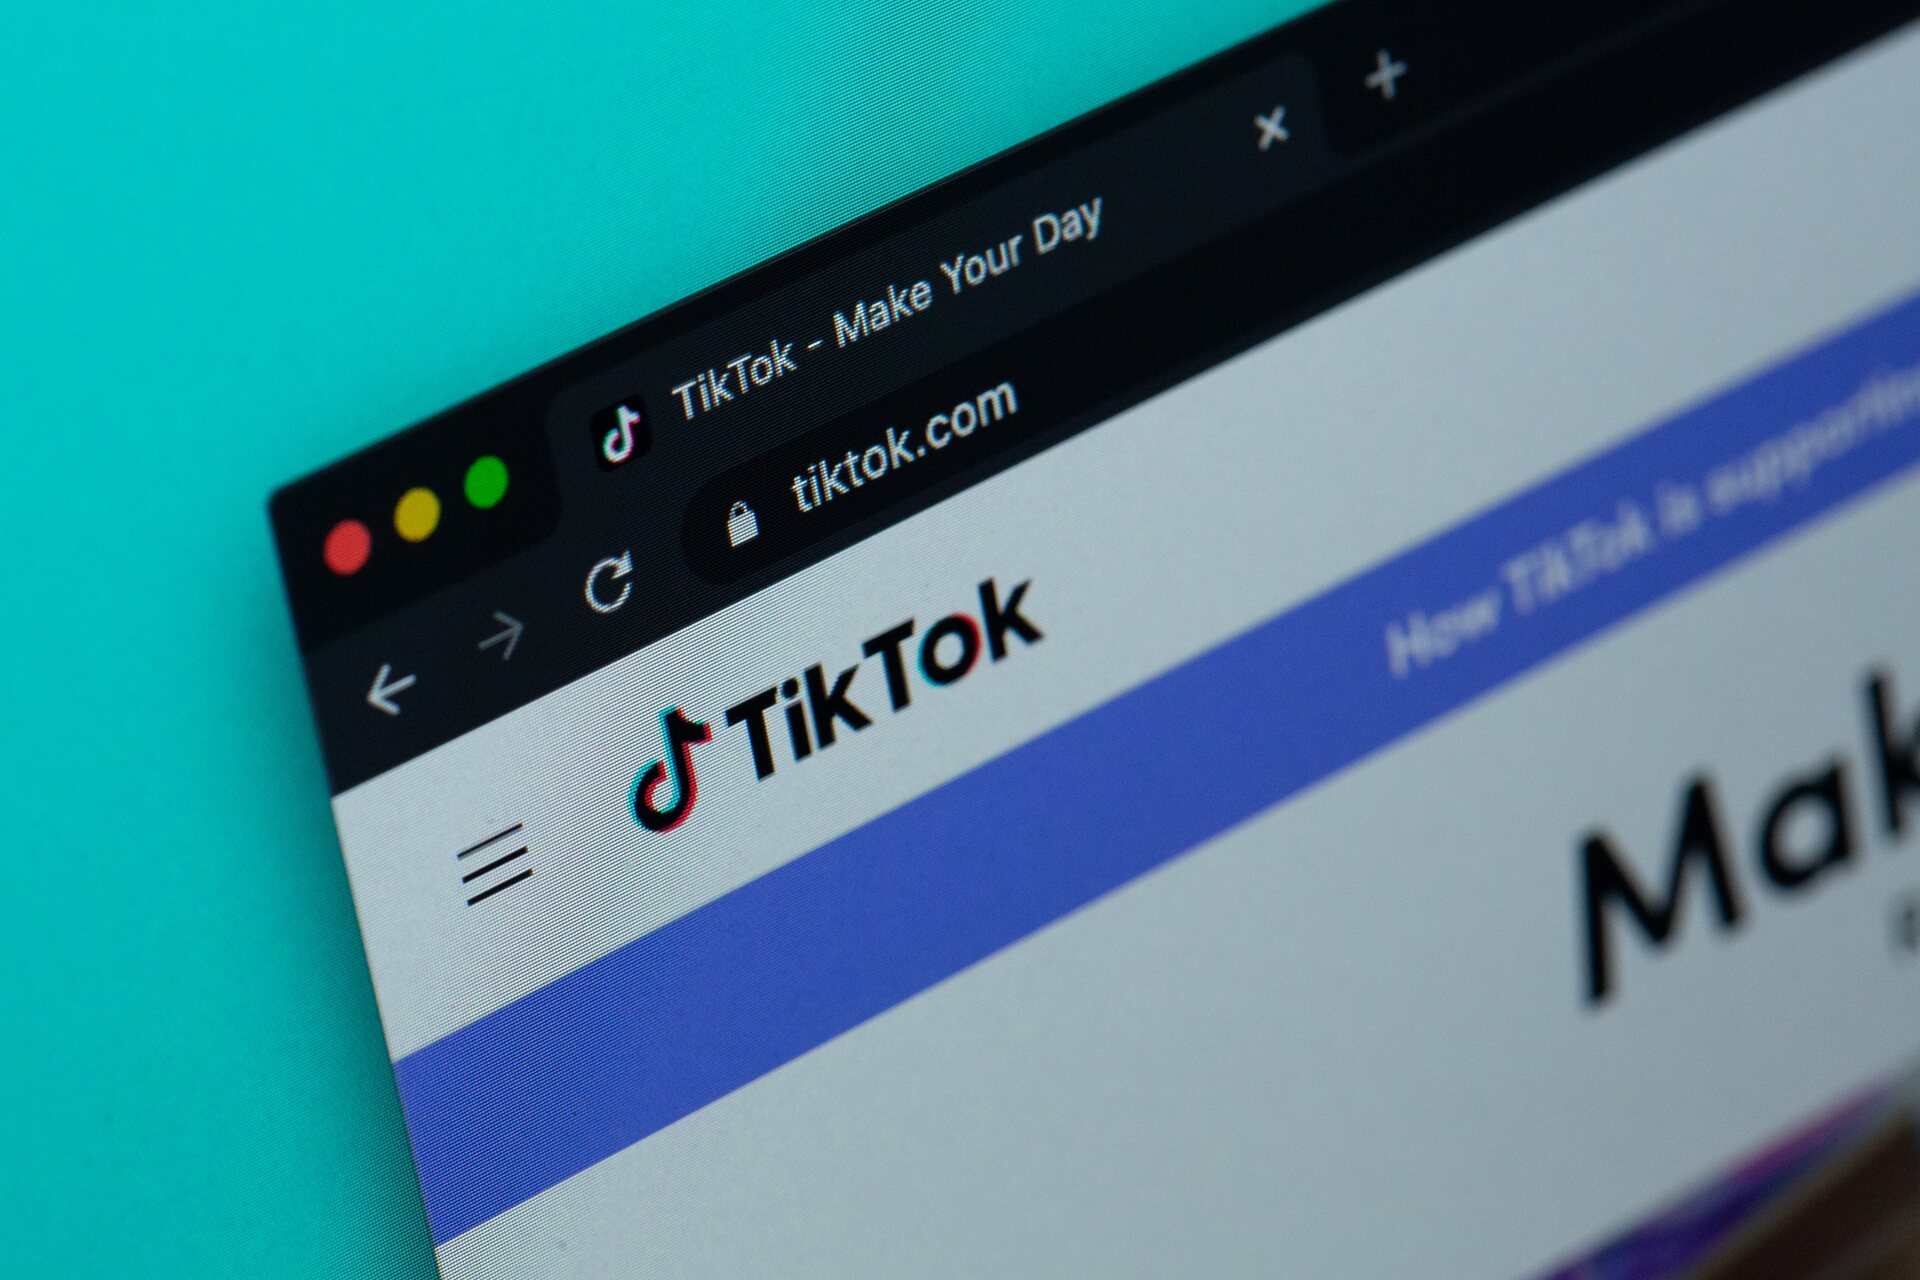  TikTok page opened on desktop